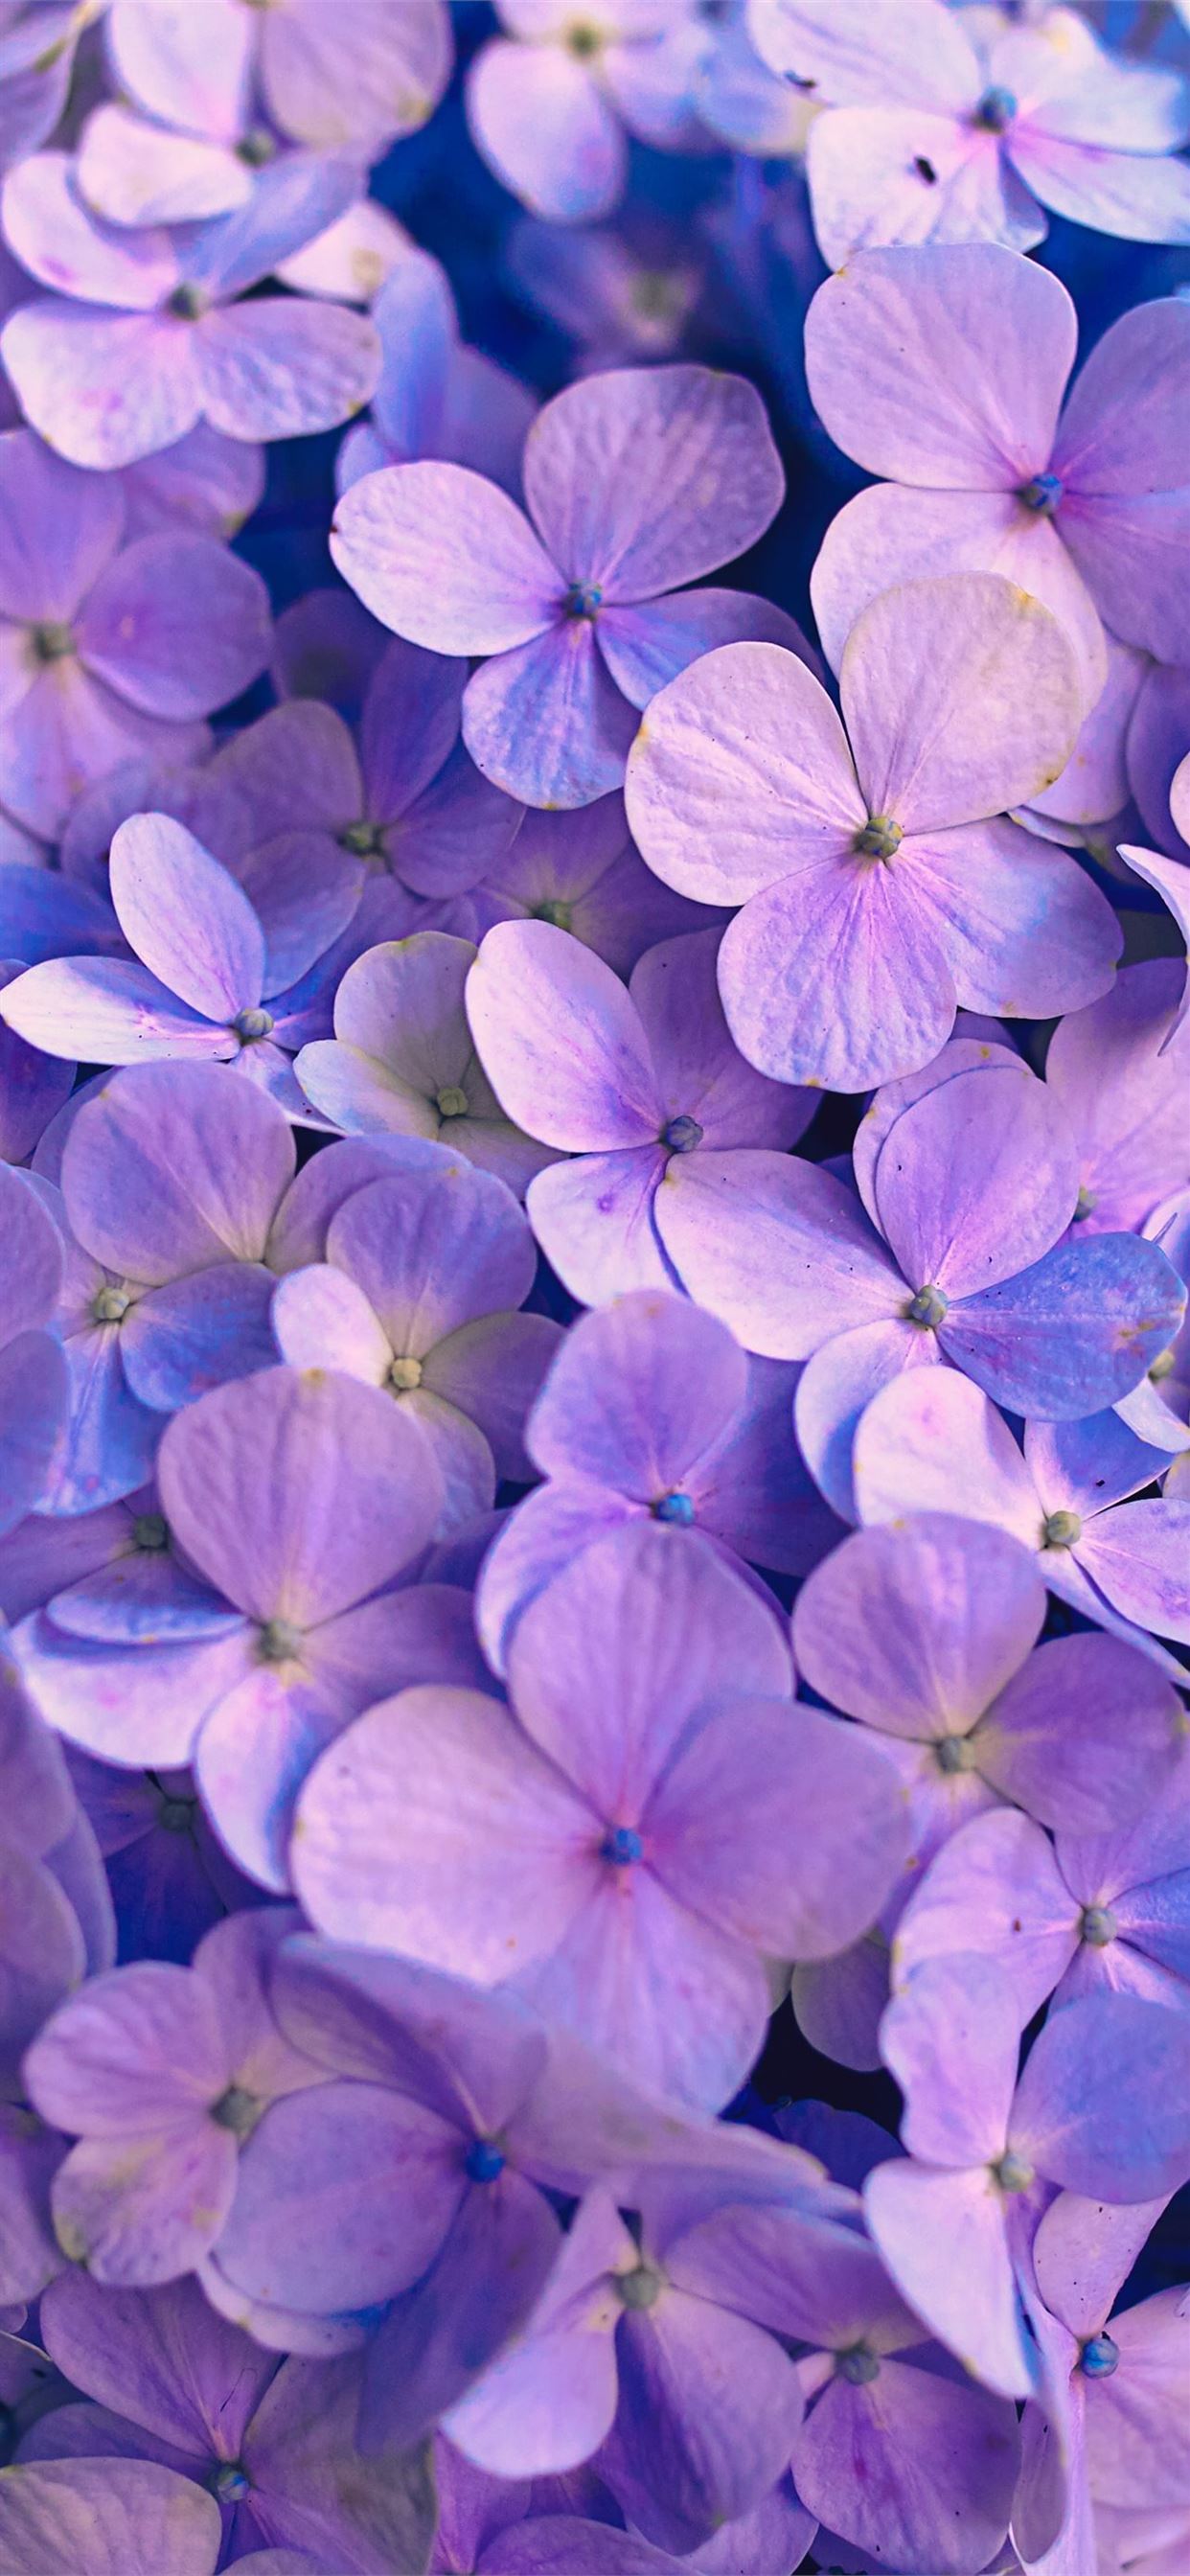 Hãy đem sắc tím lãng mạn đến cho chiếc điện thoại của bạn với những hình nền Purple Flower iPhone Wallpaper. Những bông hoa tím đậm của hình nền này tràn ngập cảm xúc và sự mơ mộng. Sự đẹp mê hoặc của những bông hoa này sẽ giúp cho chiếc điện thoại của bạn trở nên nổi bật giữa hàng ngàn thiết bị khác.